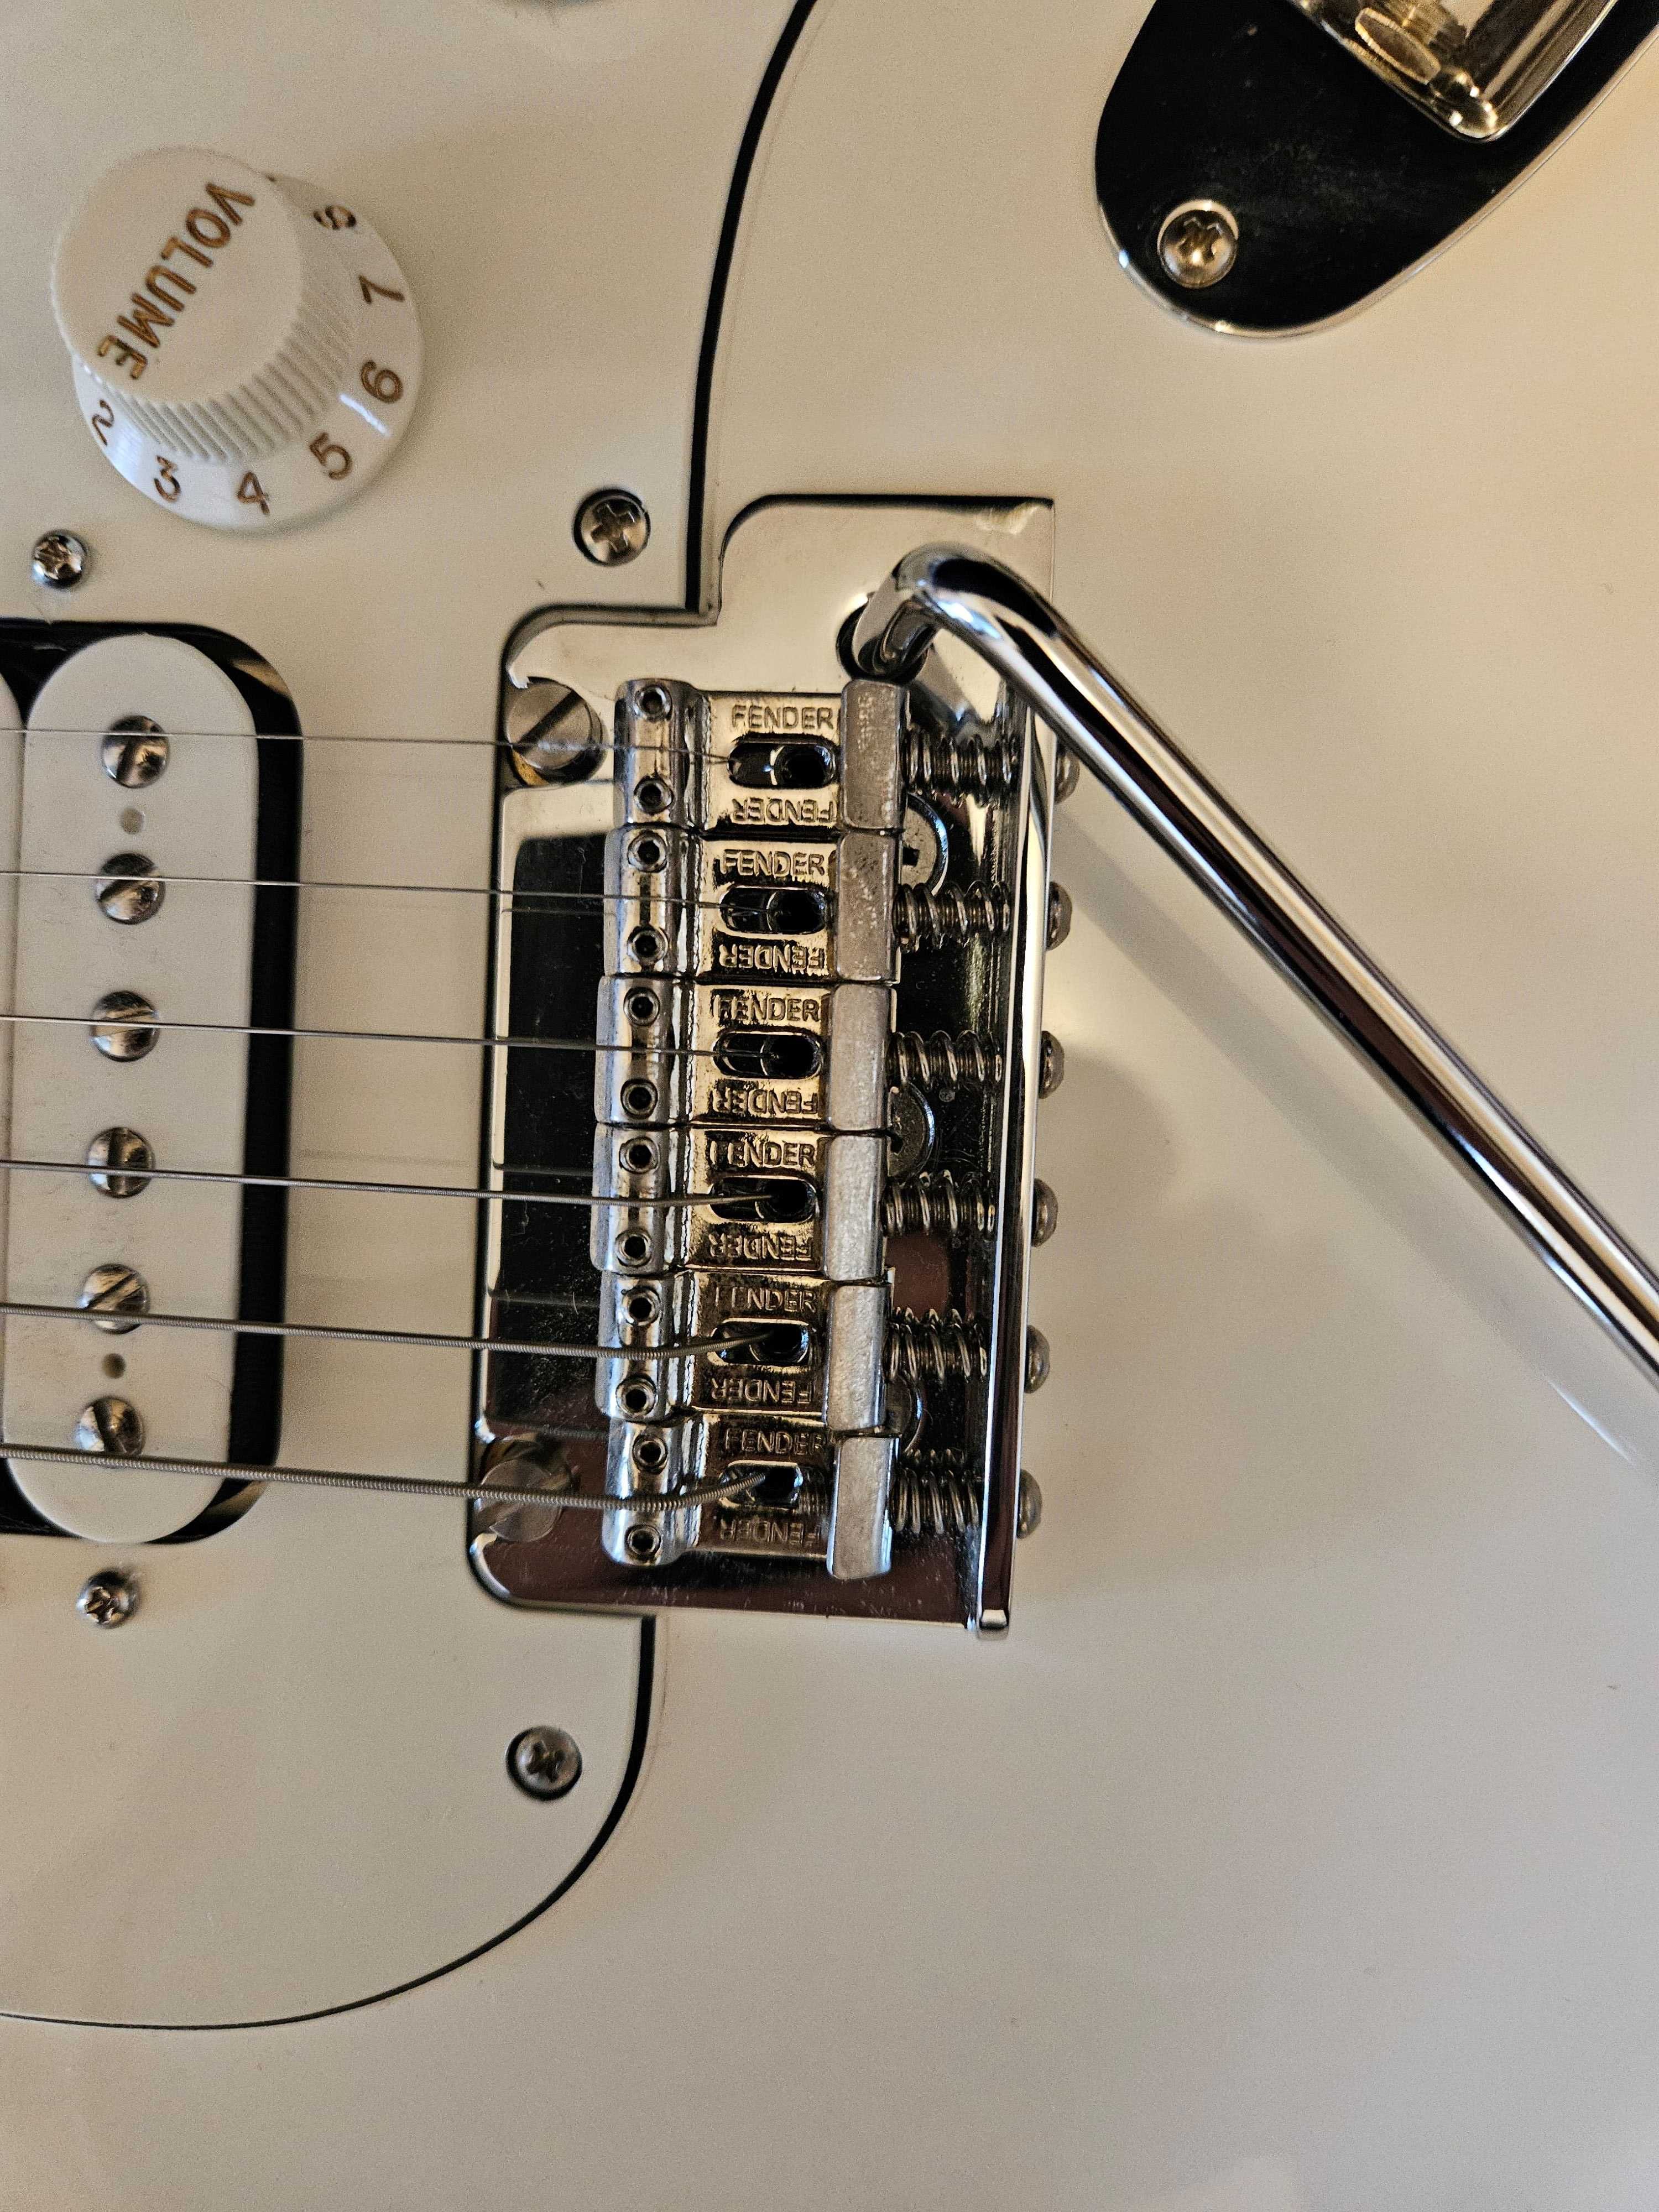 Chitara Fender Stratocaster 75th anniversary